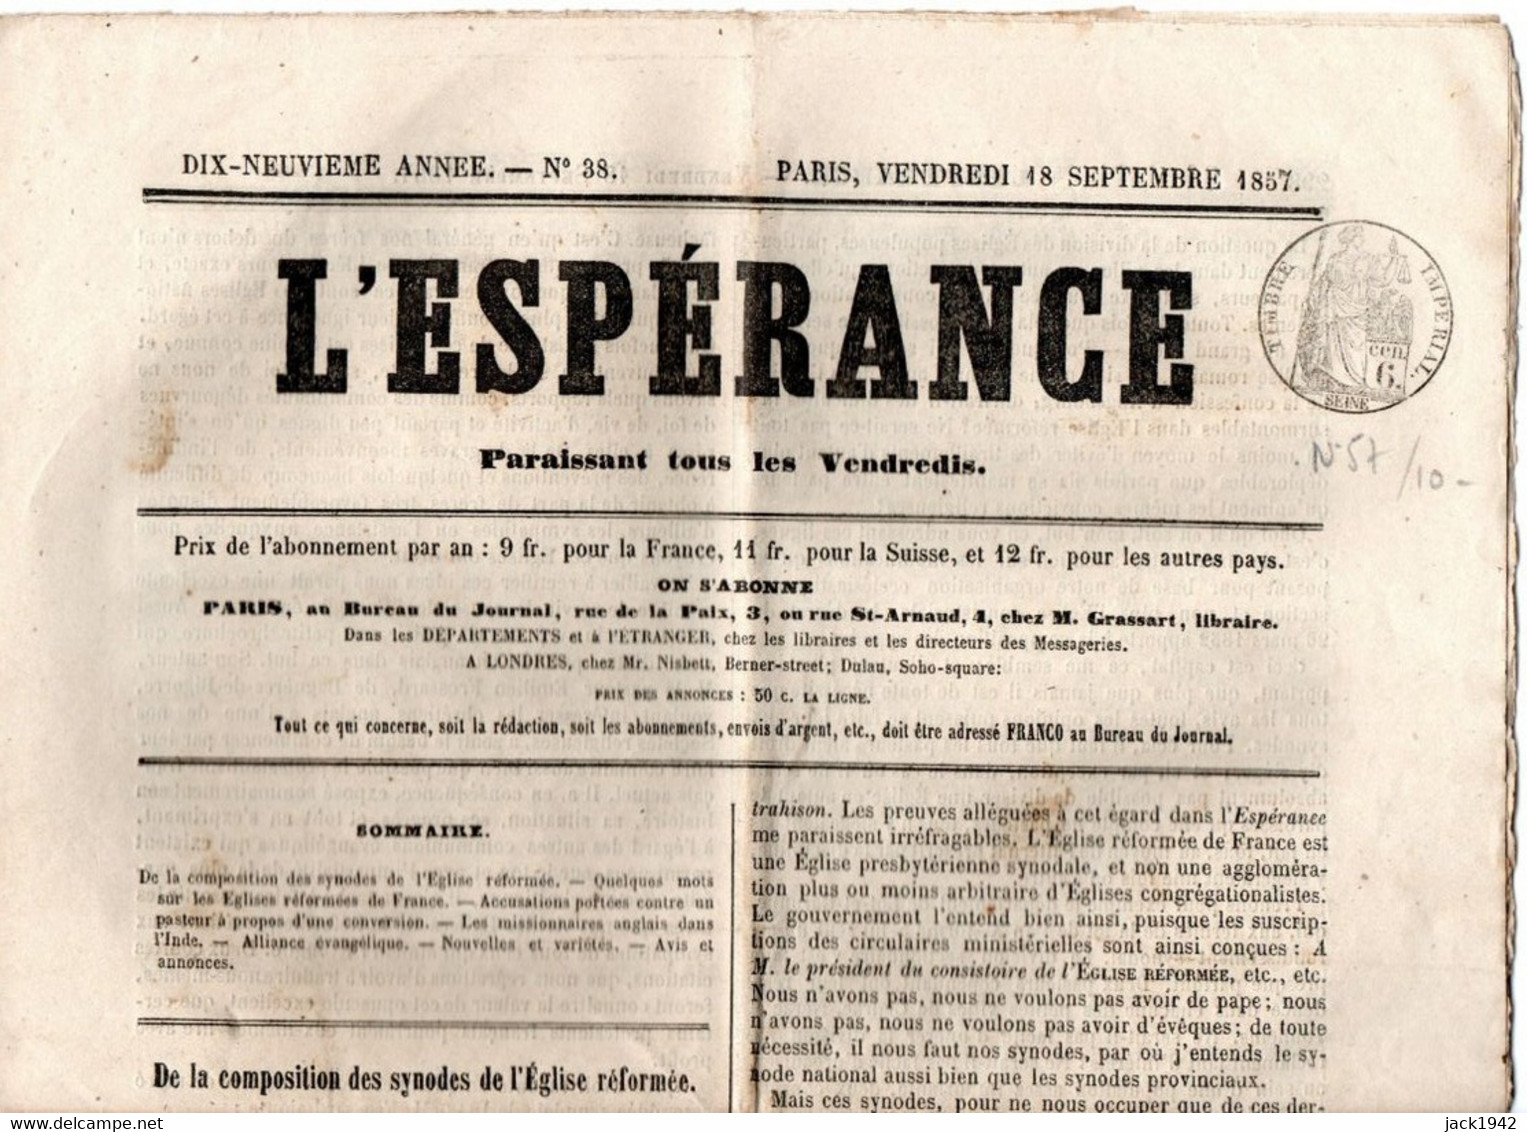 Journal L'Espérance Du 18 Septembre 1857, Avec Timbre Humide " Timbre / Impérial 6 Centimes" - Kranten